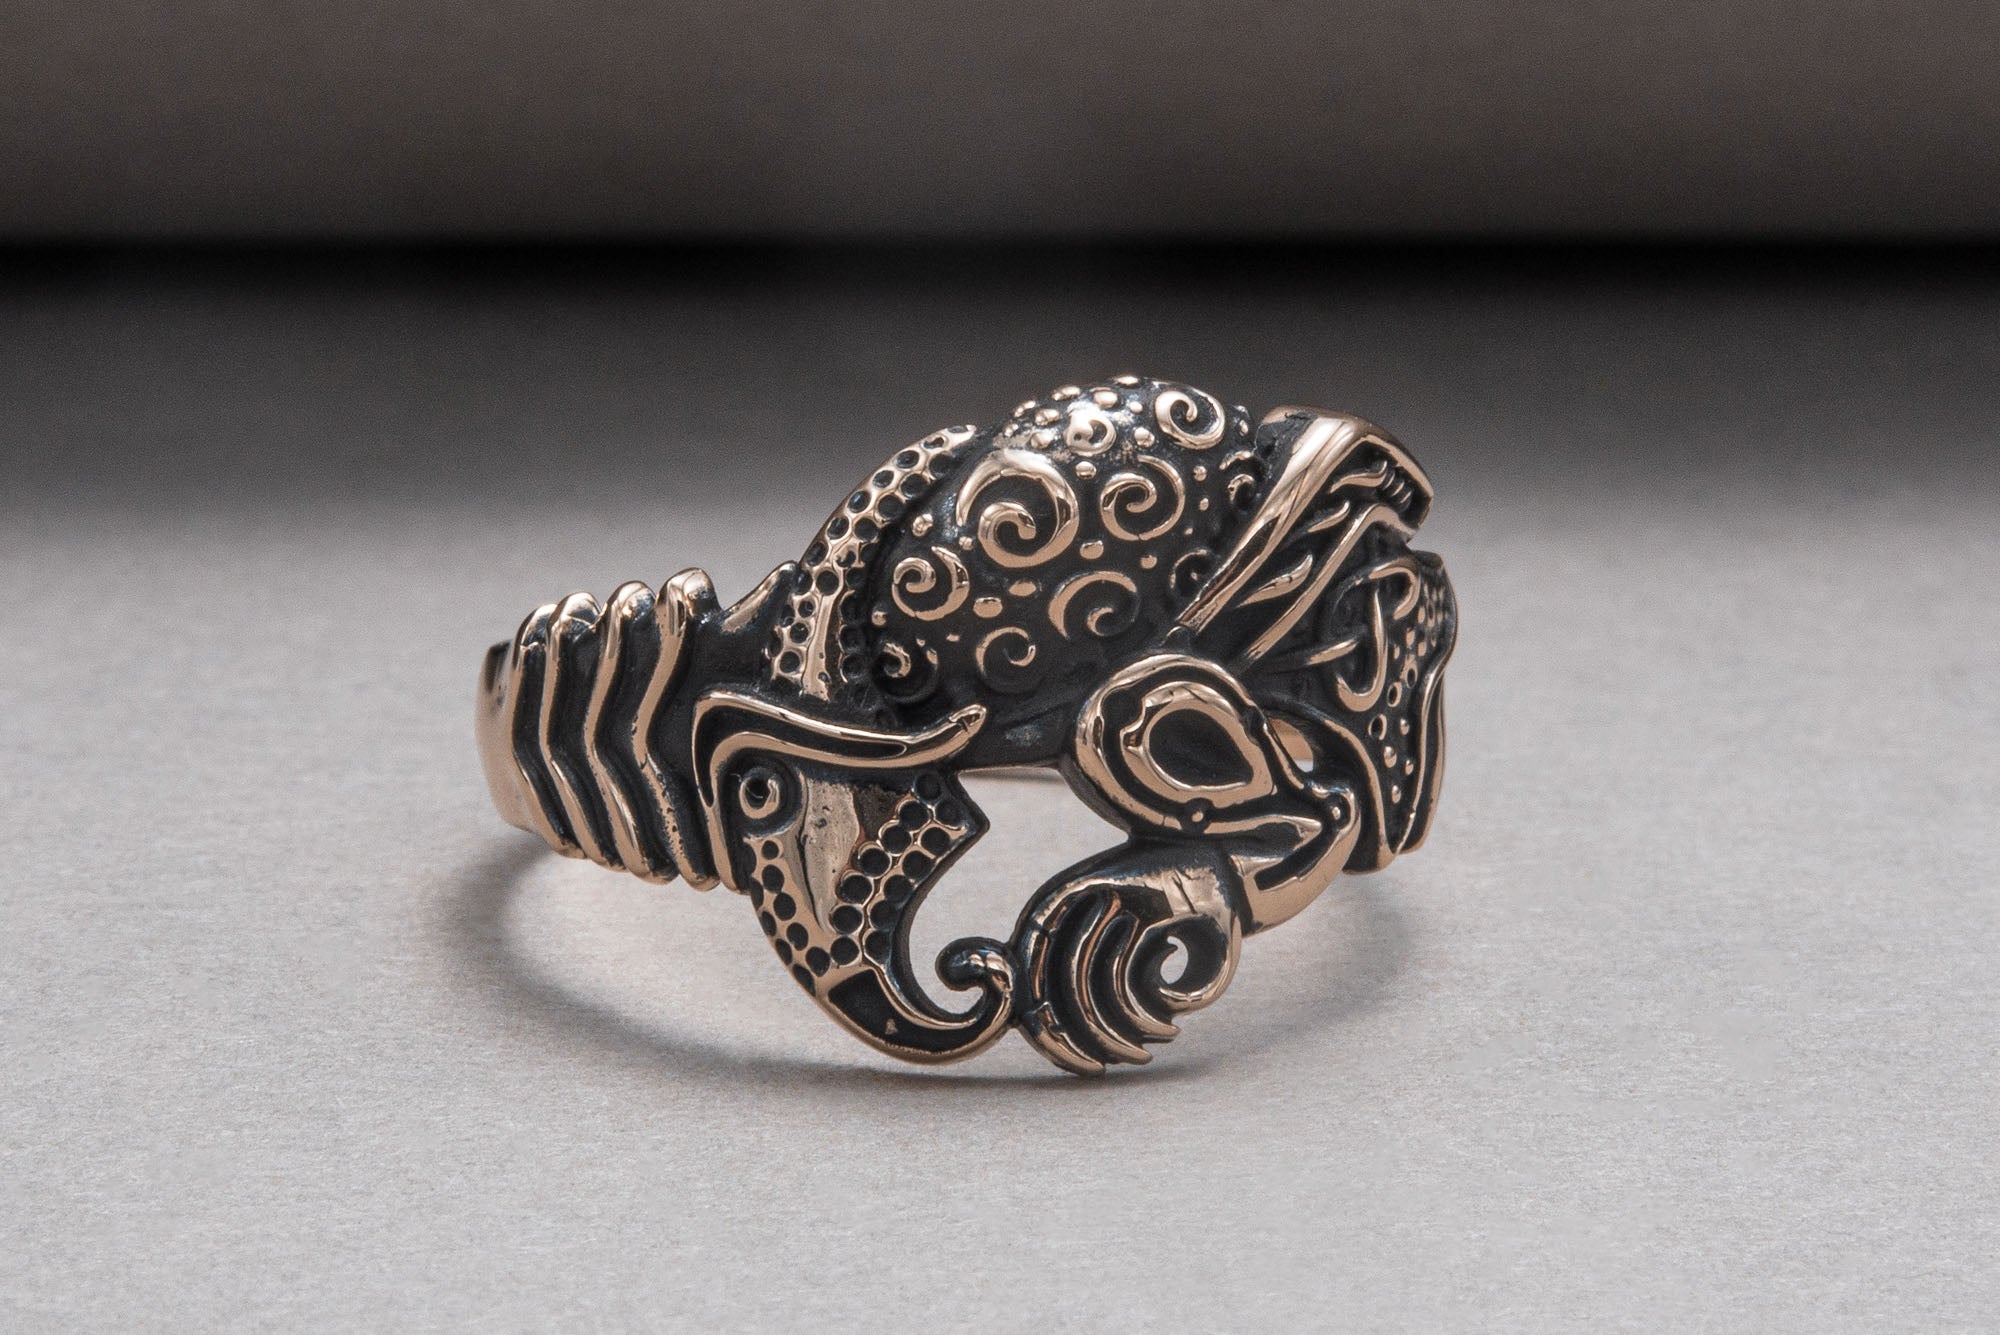 Unique Raven Ring Bronze Norse Jewelry - vikingworkshop